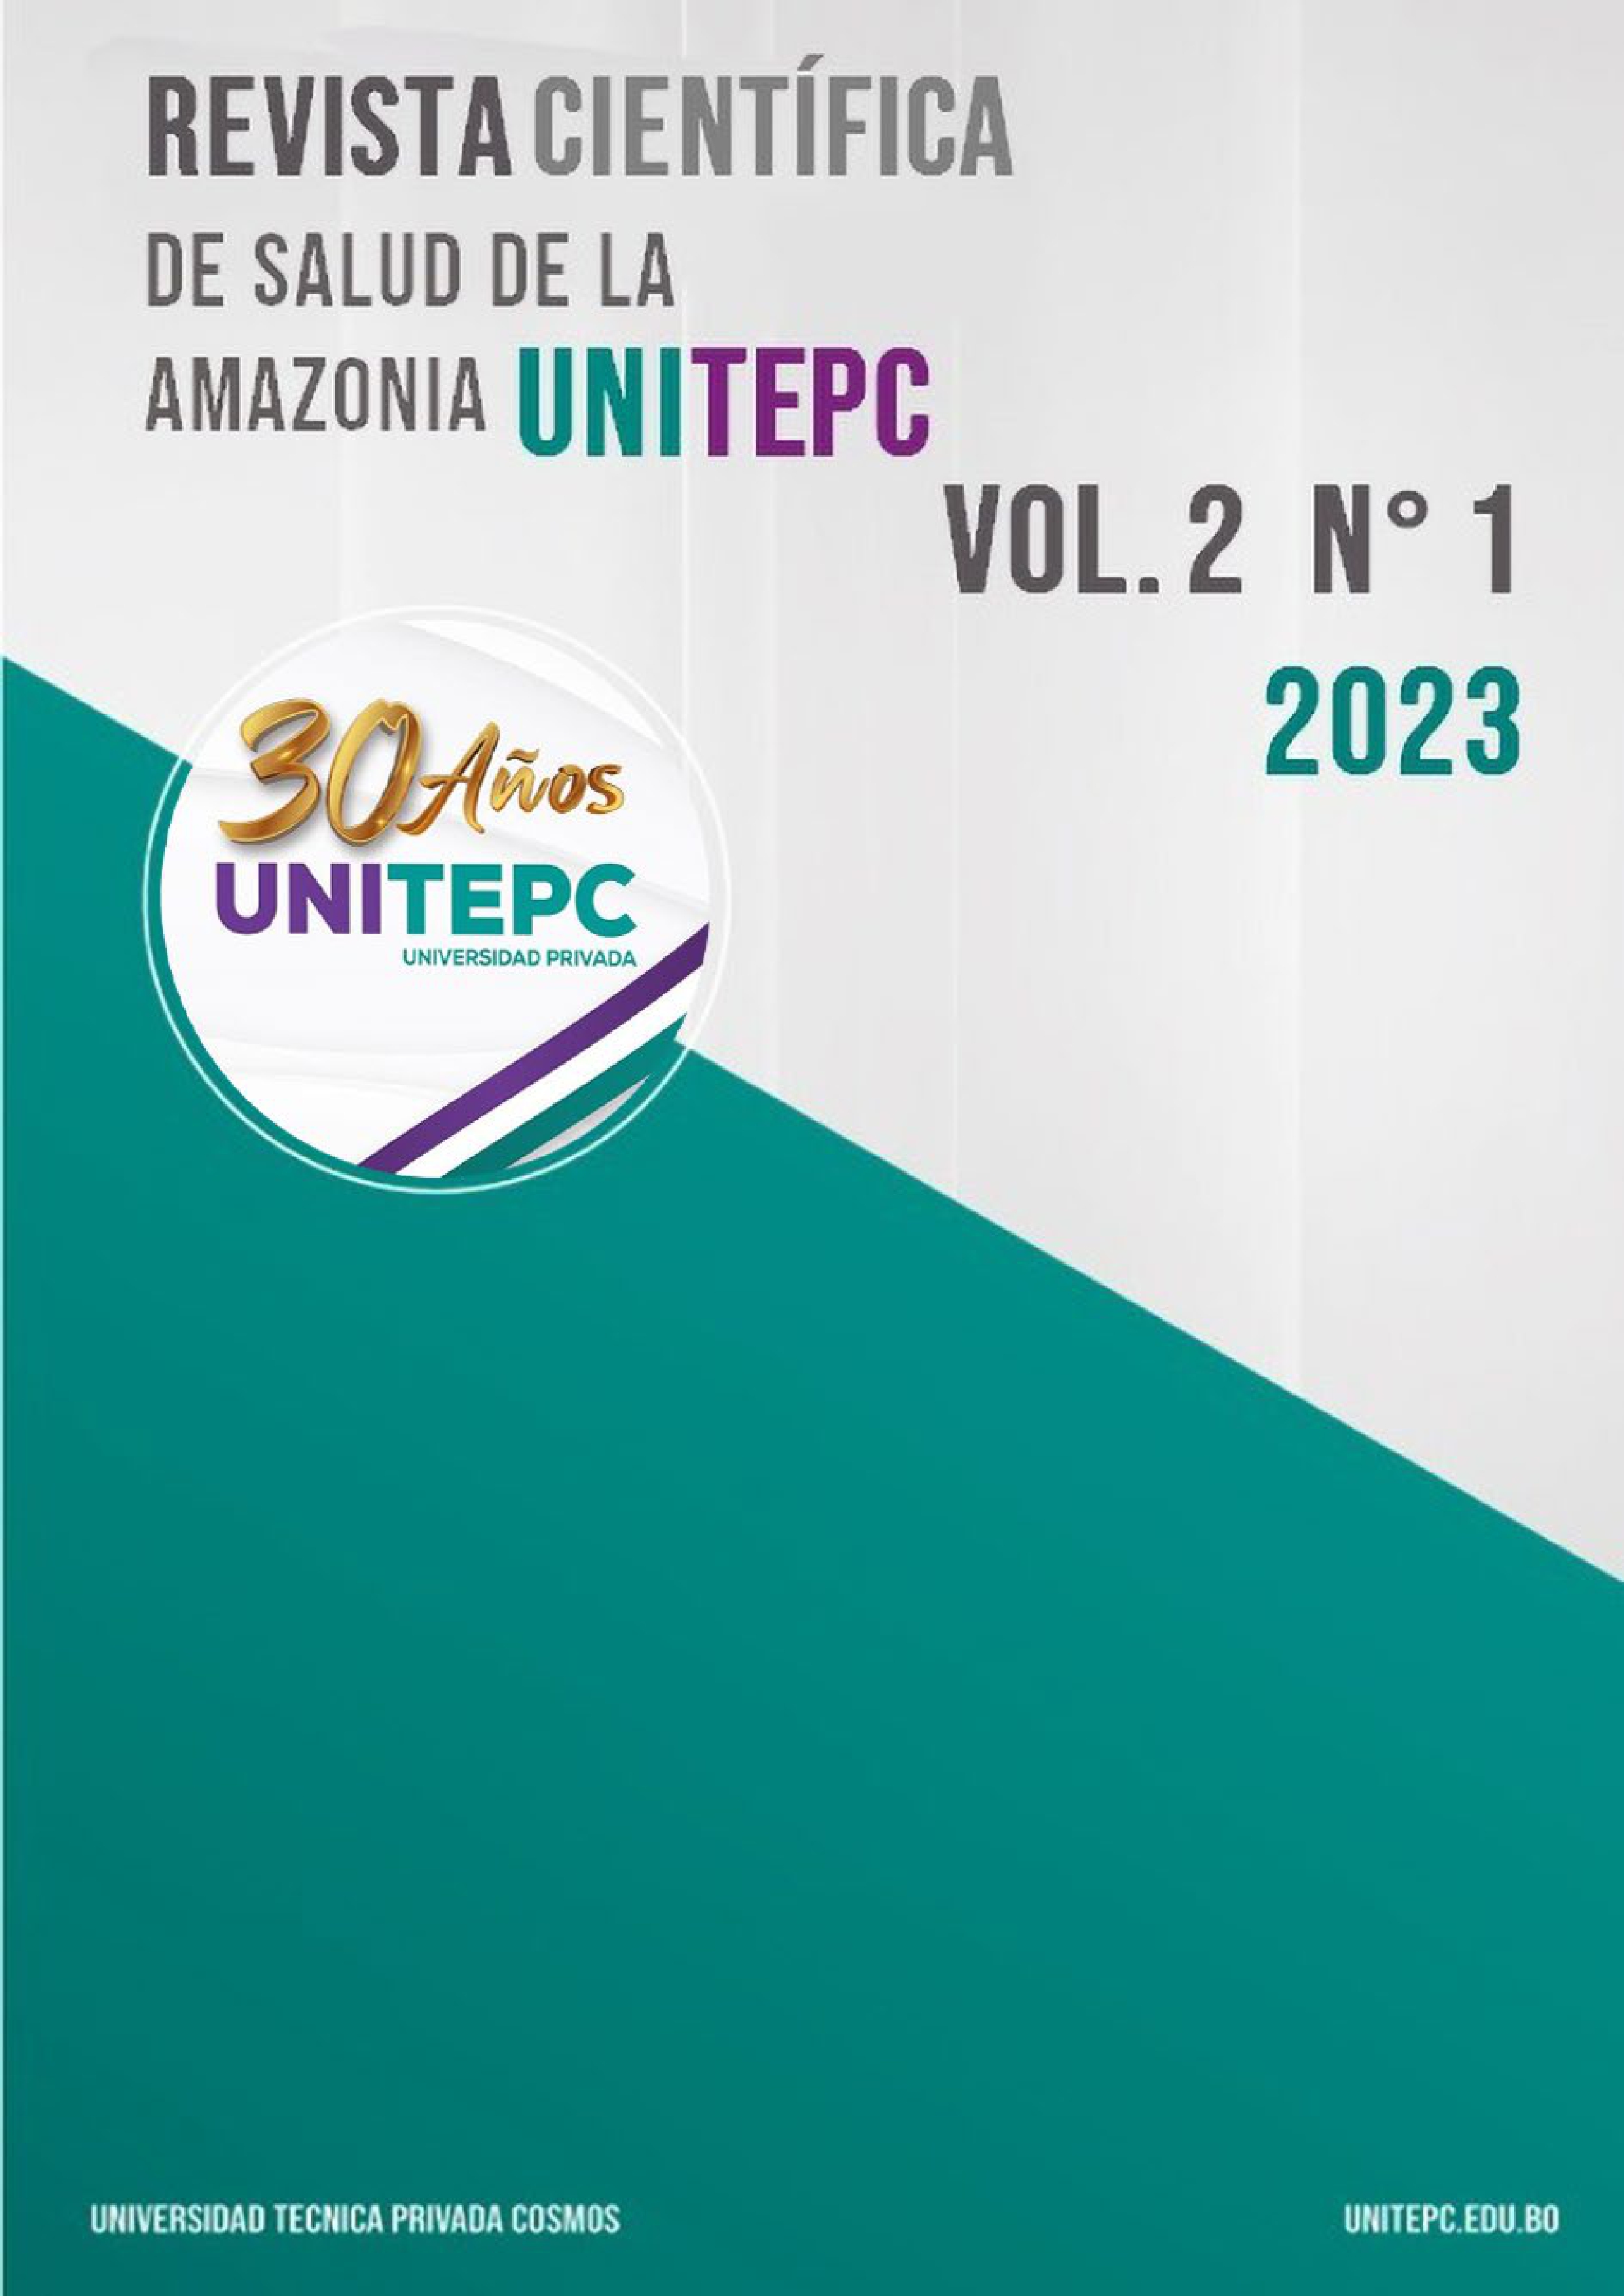 					Visualizar v. 2 n. 1 (2023): Revista Científica de Salud de la Amazonia UNITEPC
				